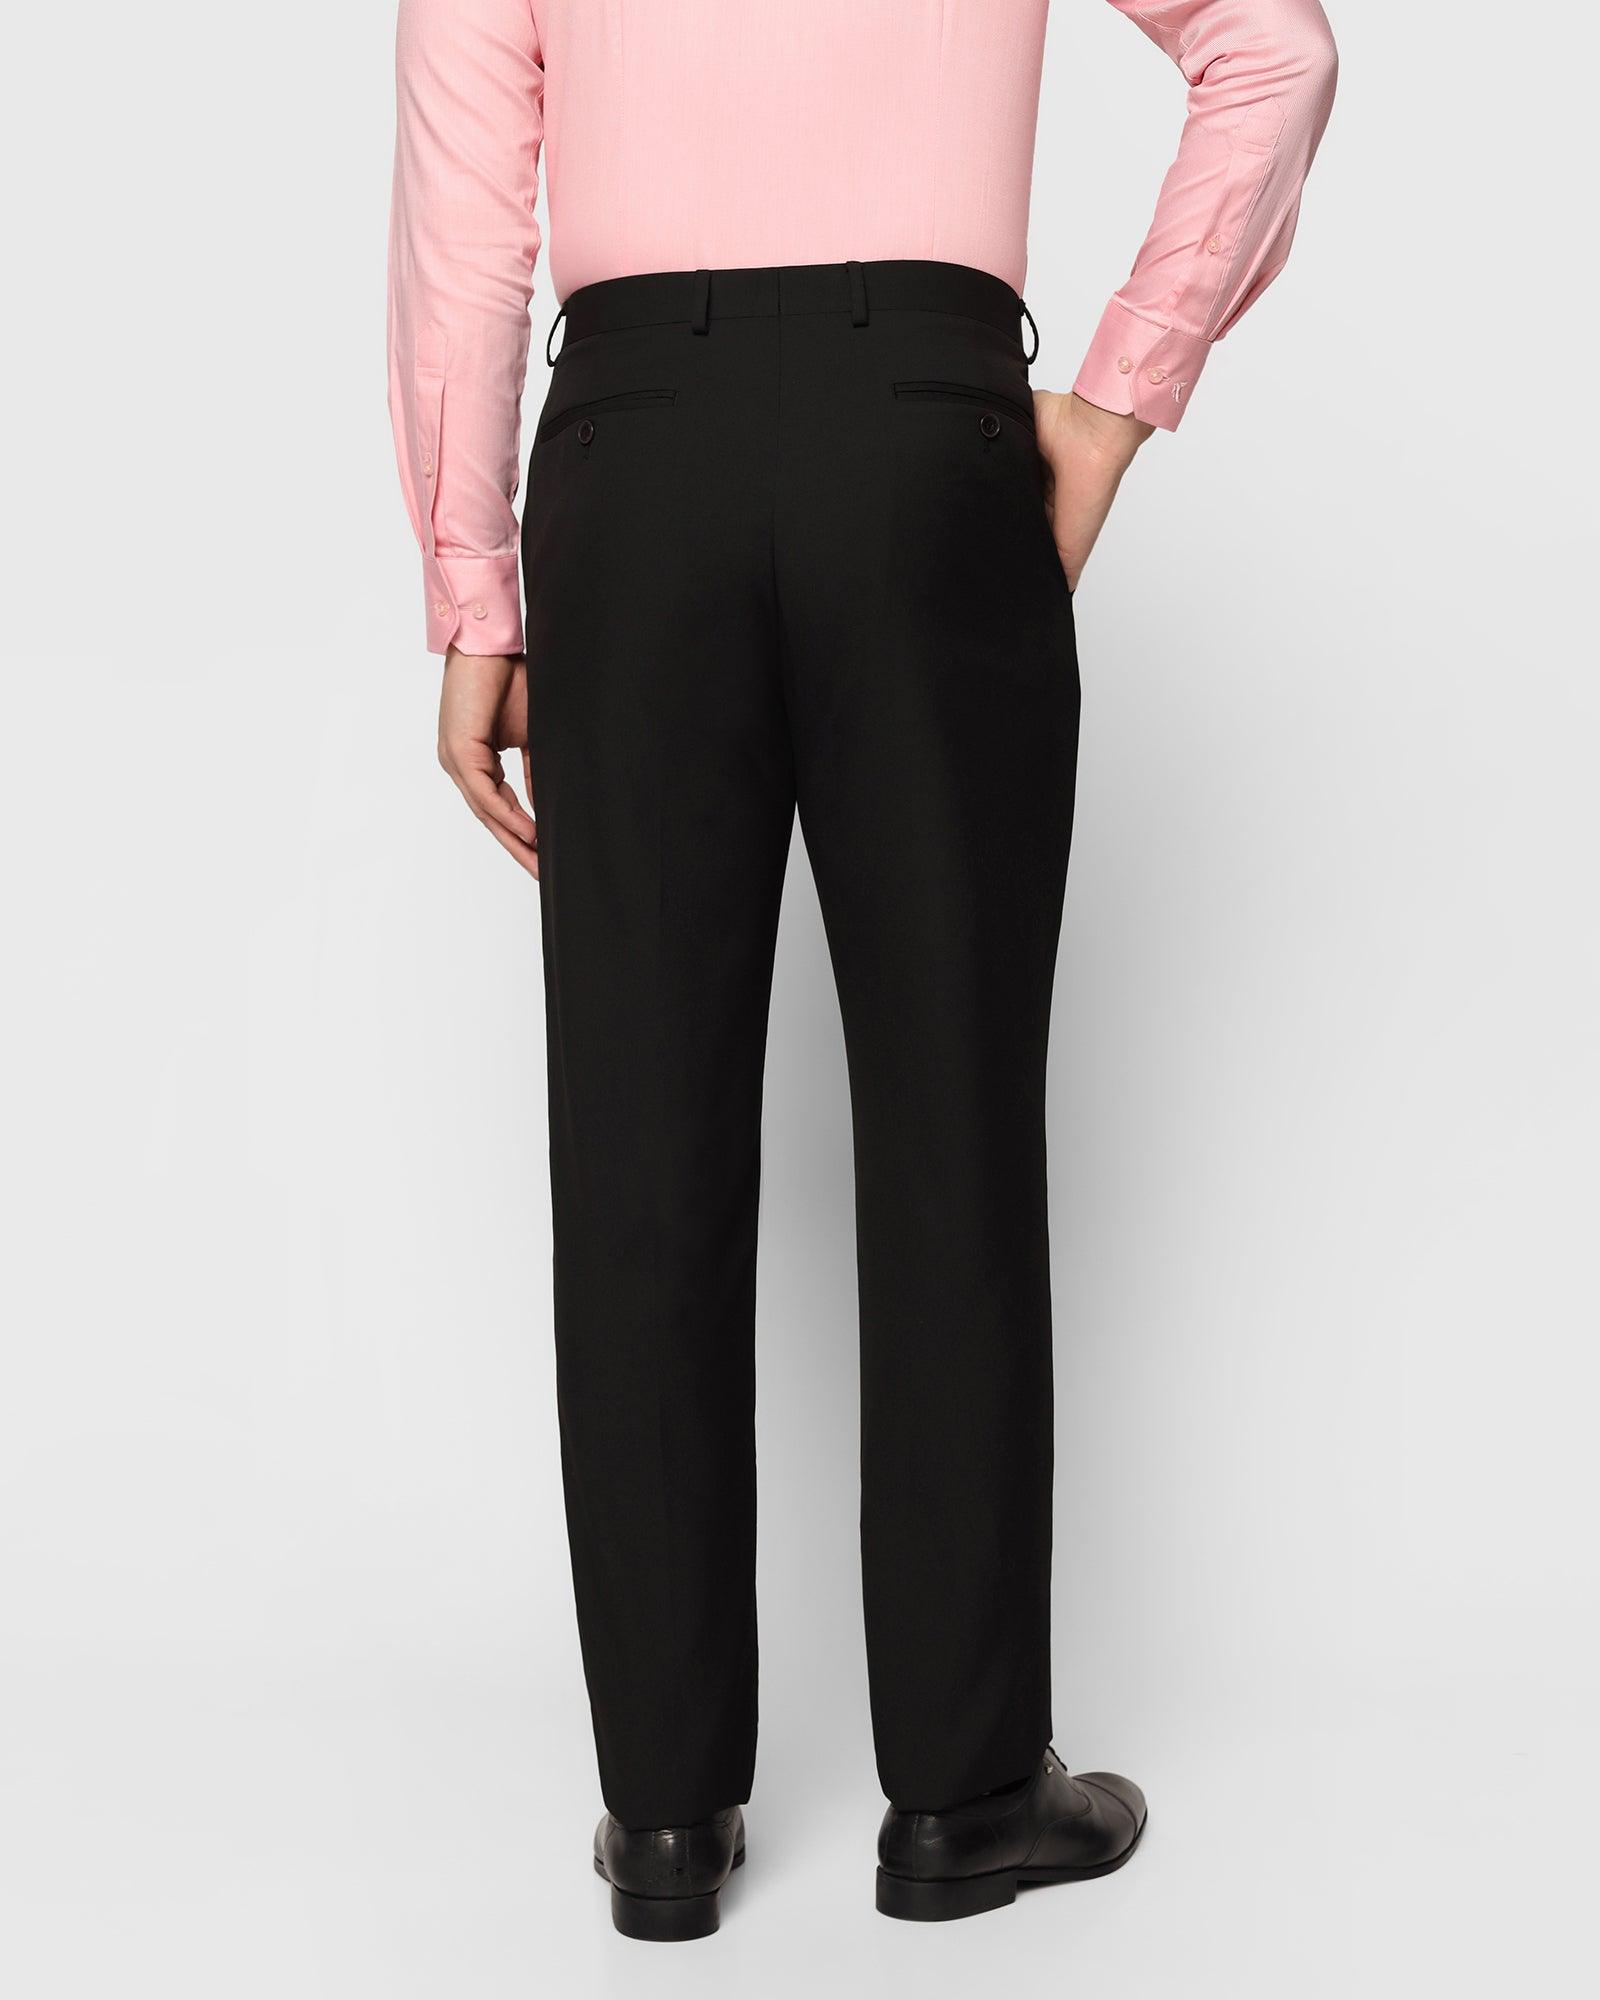 formal trousers in black b 90 bedward blackberrys clothing 2